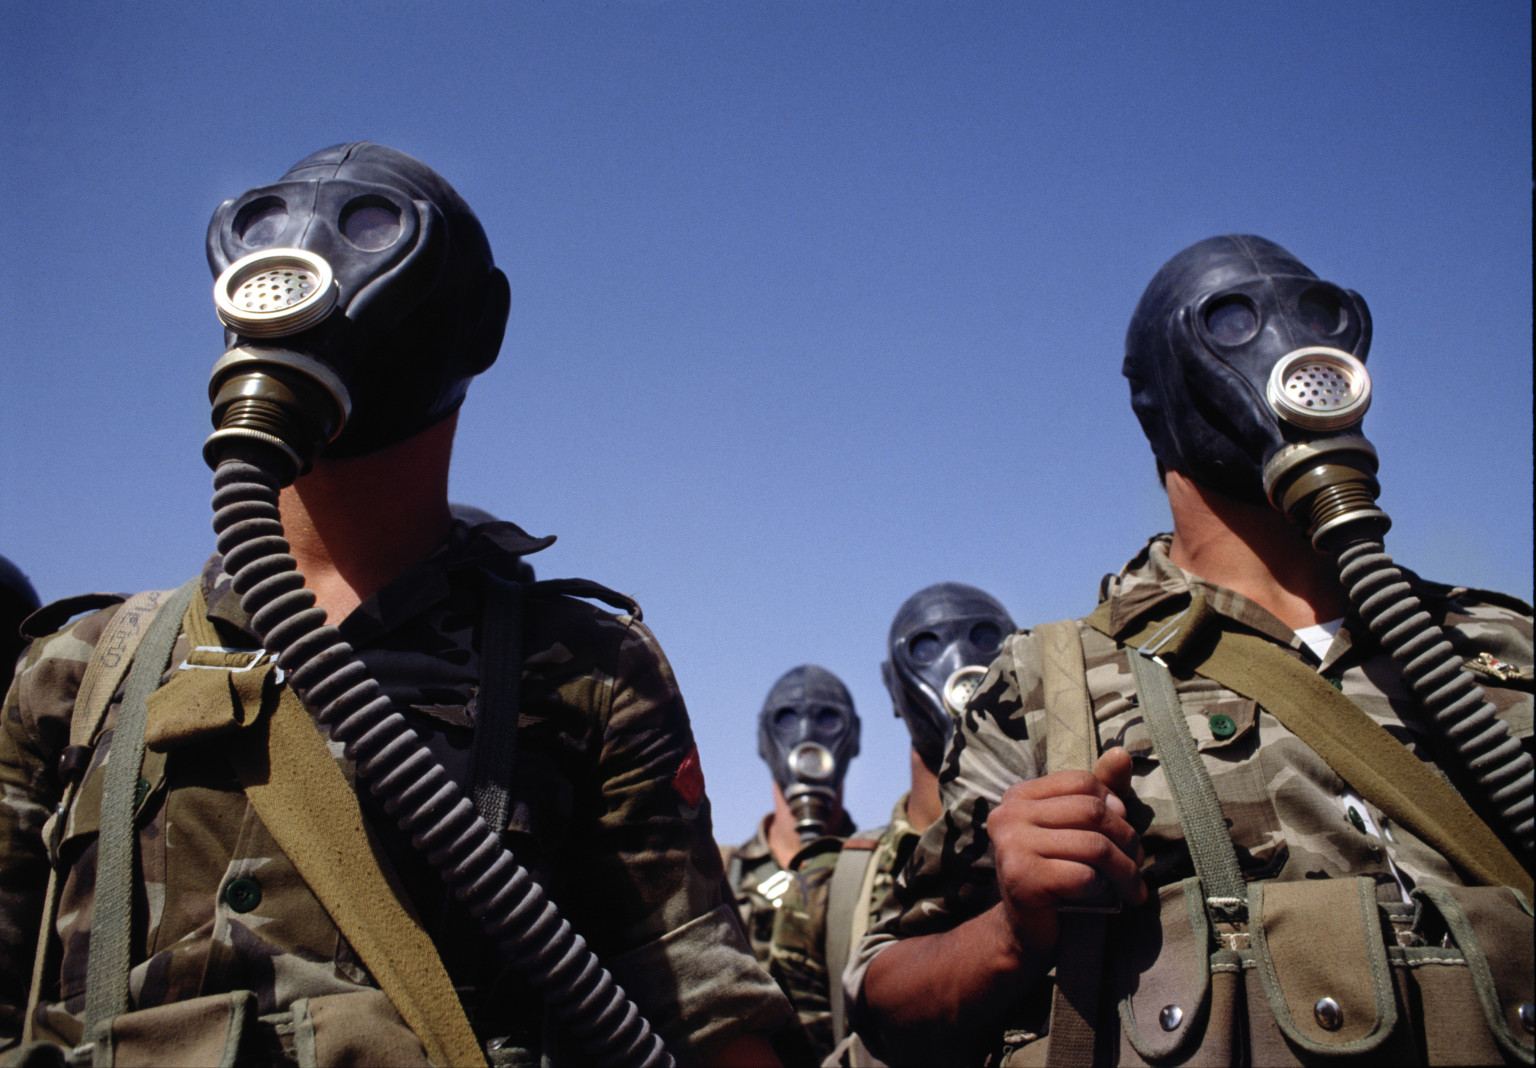 ΕΚΤΑΚΤΟ: Για ρίψη χημικών αερίων κατηγορούν αντάρτες τον συριακό Στρατό- Ανησυχία για επίθεση από ΗΠΑ